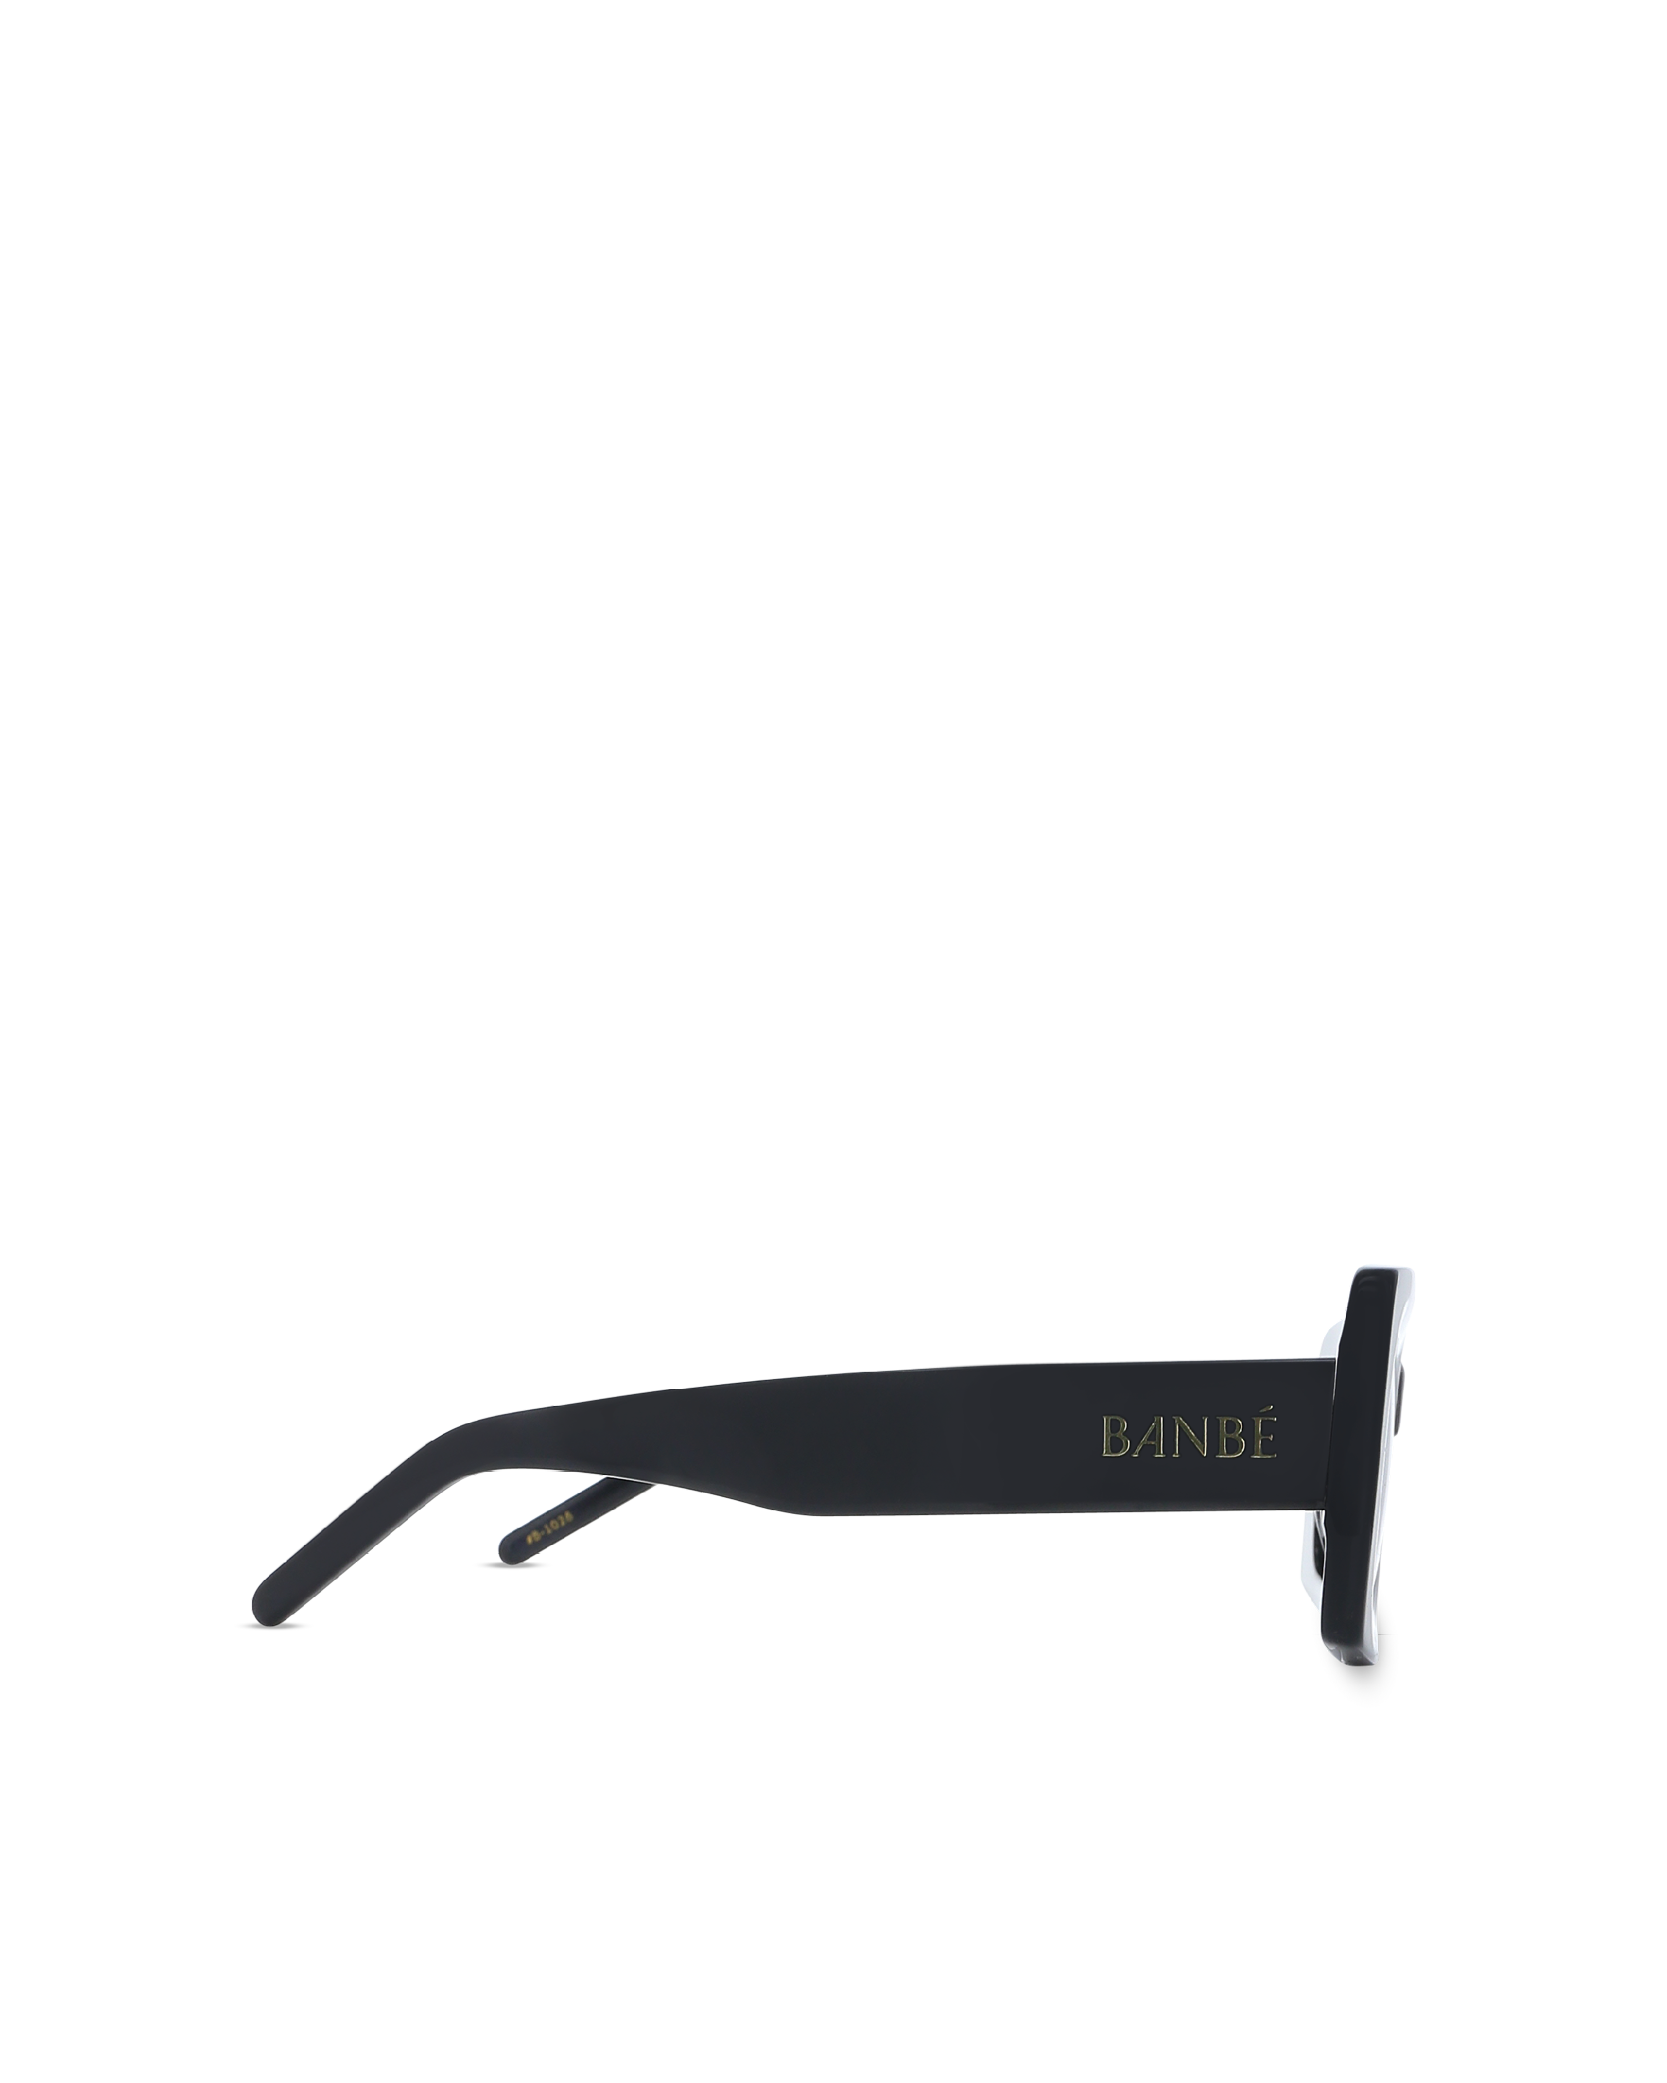 THE KENDALL - BLACK-SMOKE  $79.95 SUNGLASSES BANBE Banbé Eyewear